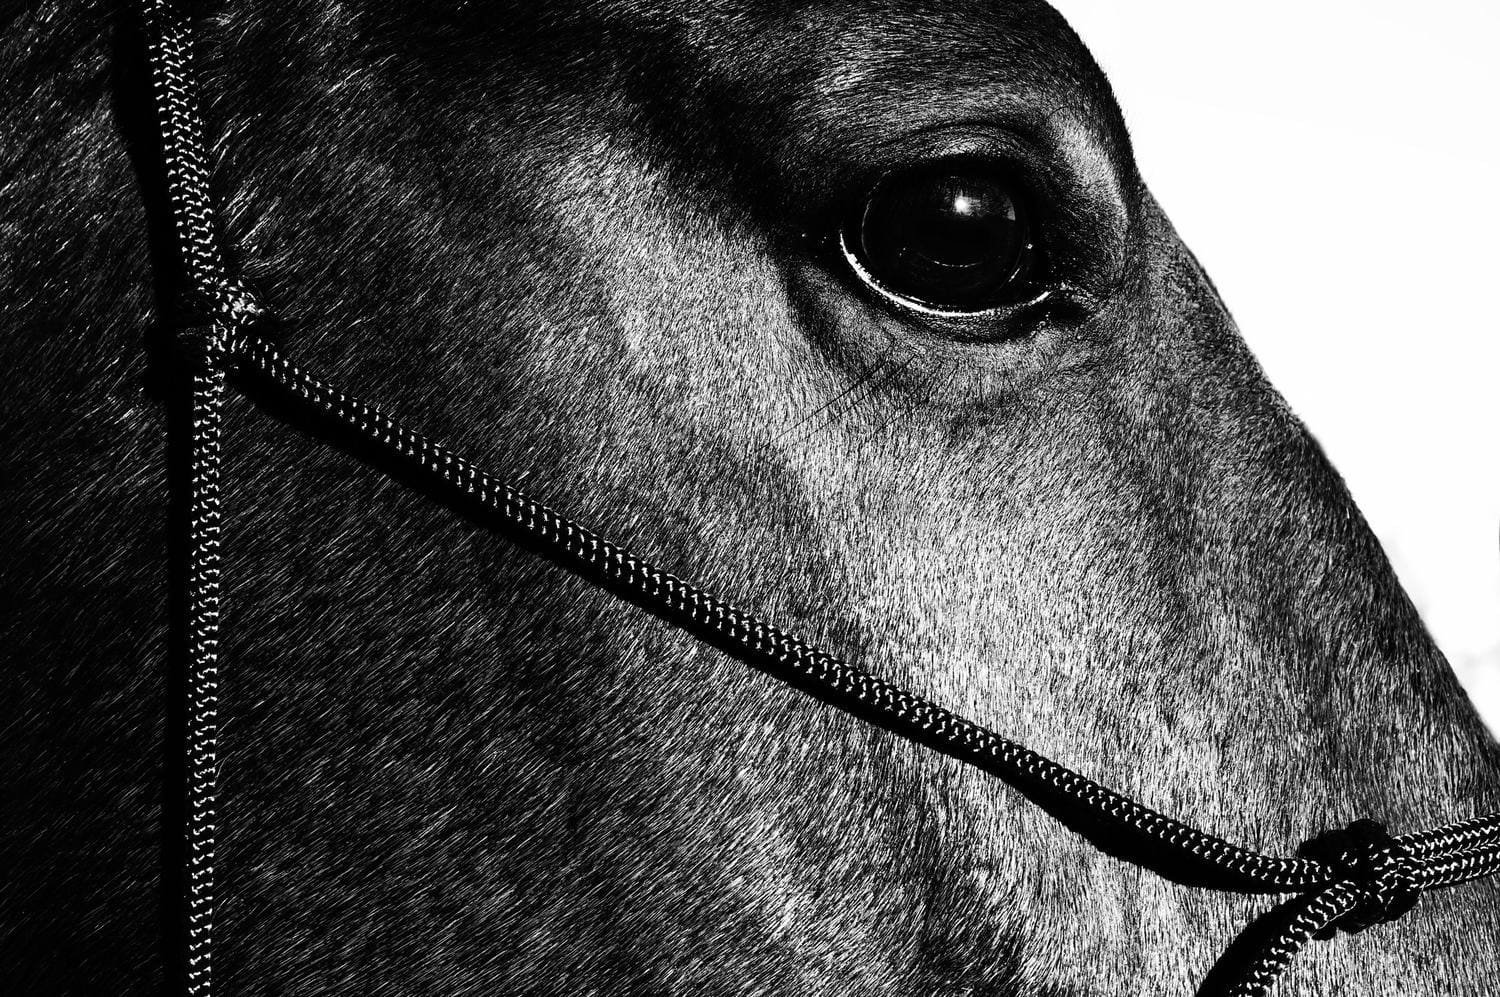 photographie equestre, chevaux, equitation, art, black and white, colors, sport, portrait